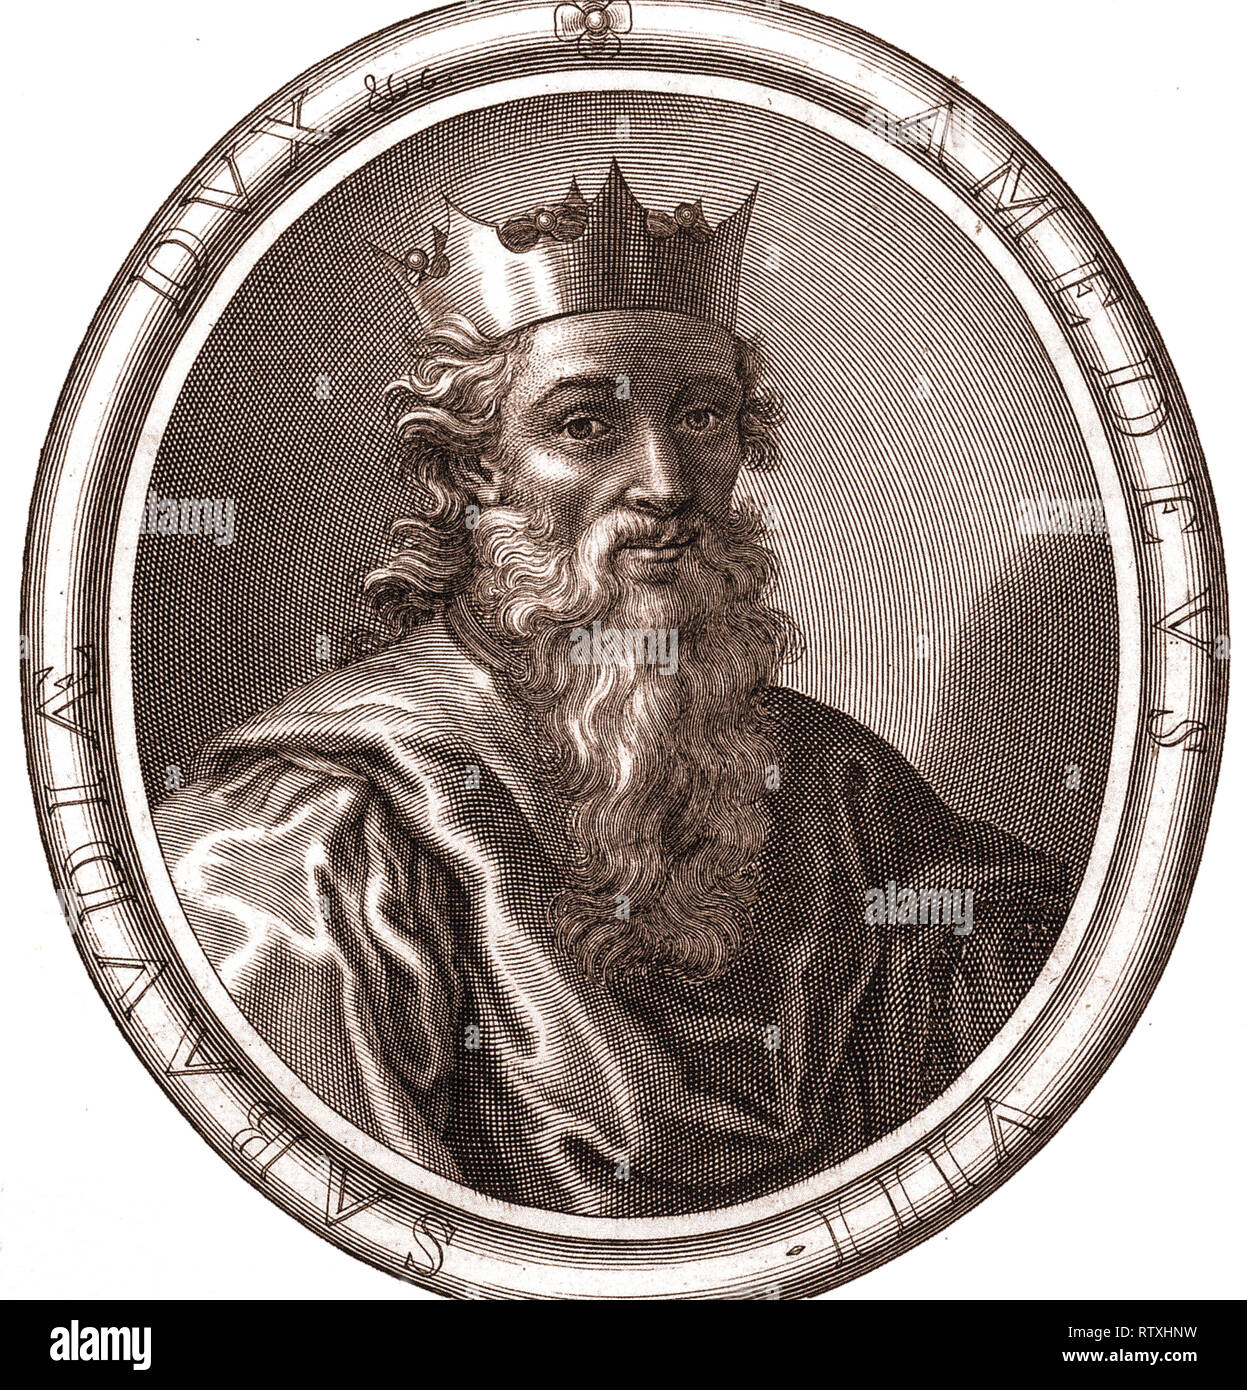 Amedeo VIII di Savoia, chiamato il Pacifico (ChambÃ©ry, 4 settembre 1383 - Ripaille, 6 gennaio 1451), fu conte e poi duca di Savoia, Principe di Piemonte e di Acaia, Conte di Aosta, Ginevra, Moriana e Nizza, fino al 6 gennaio 1440. Dal 24 luglio 1440 al 7 aprile 1449 era l'ultimo antipapa con il nome di Felice V. Foto Stock